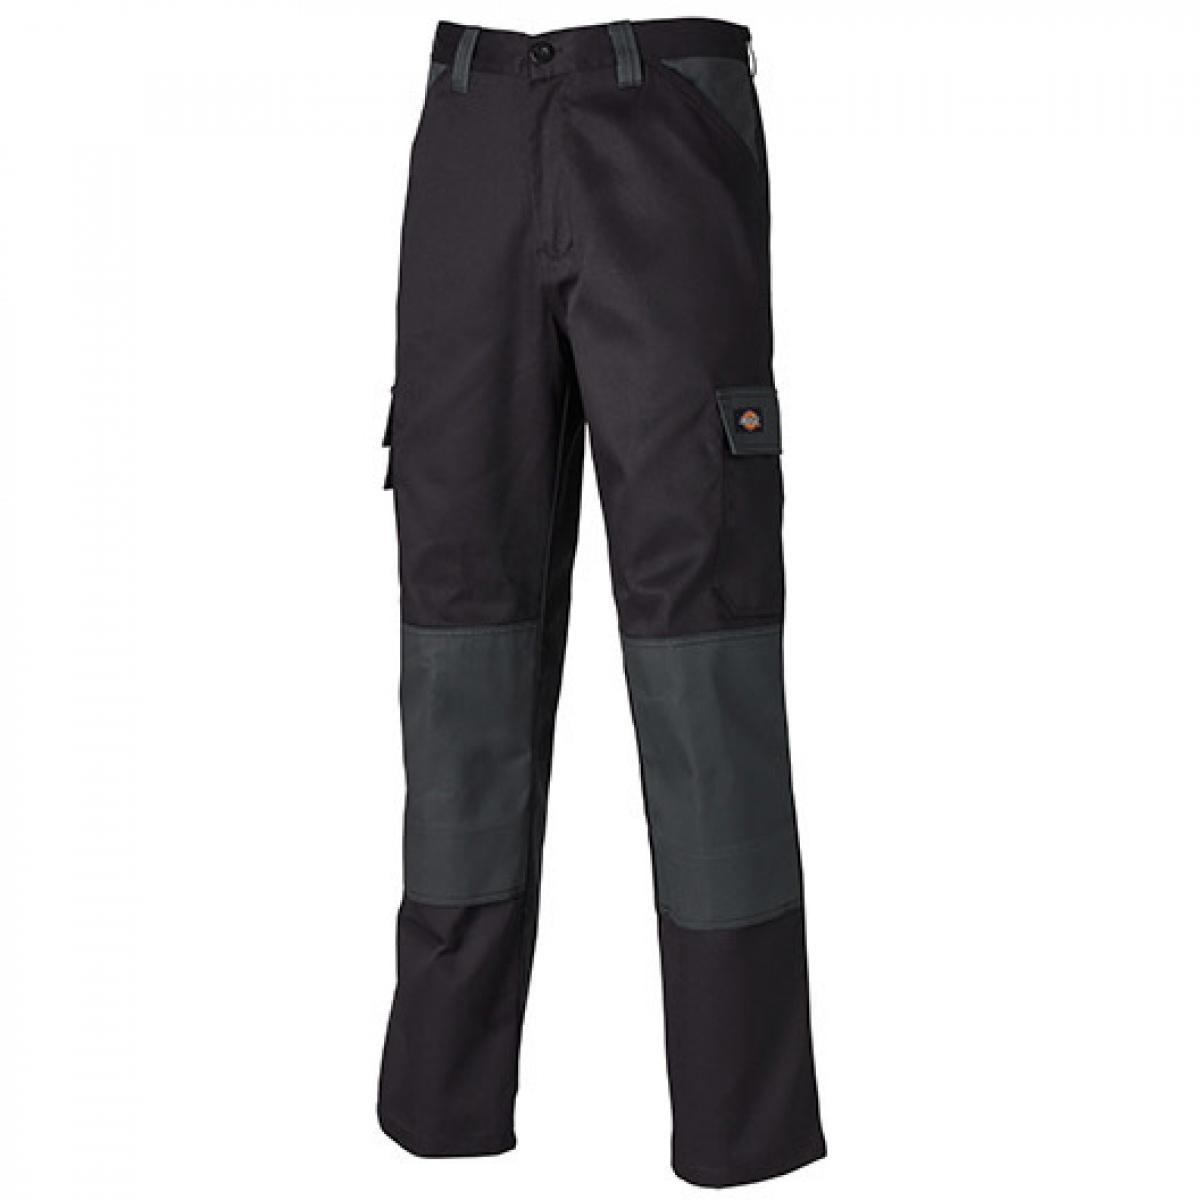 Hersteller: Dickies Herstellernummer: ED24/7 Artikelbezeichnung: Everyday Workwear Bundhose - ED24/7 Farbe: Black/Grey (Solid)